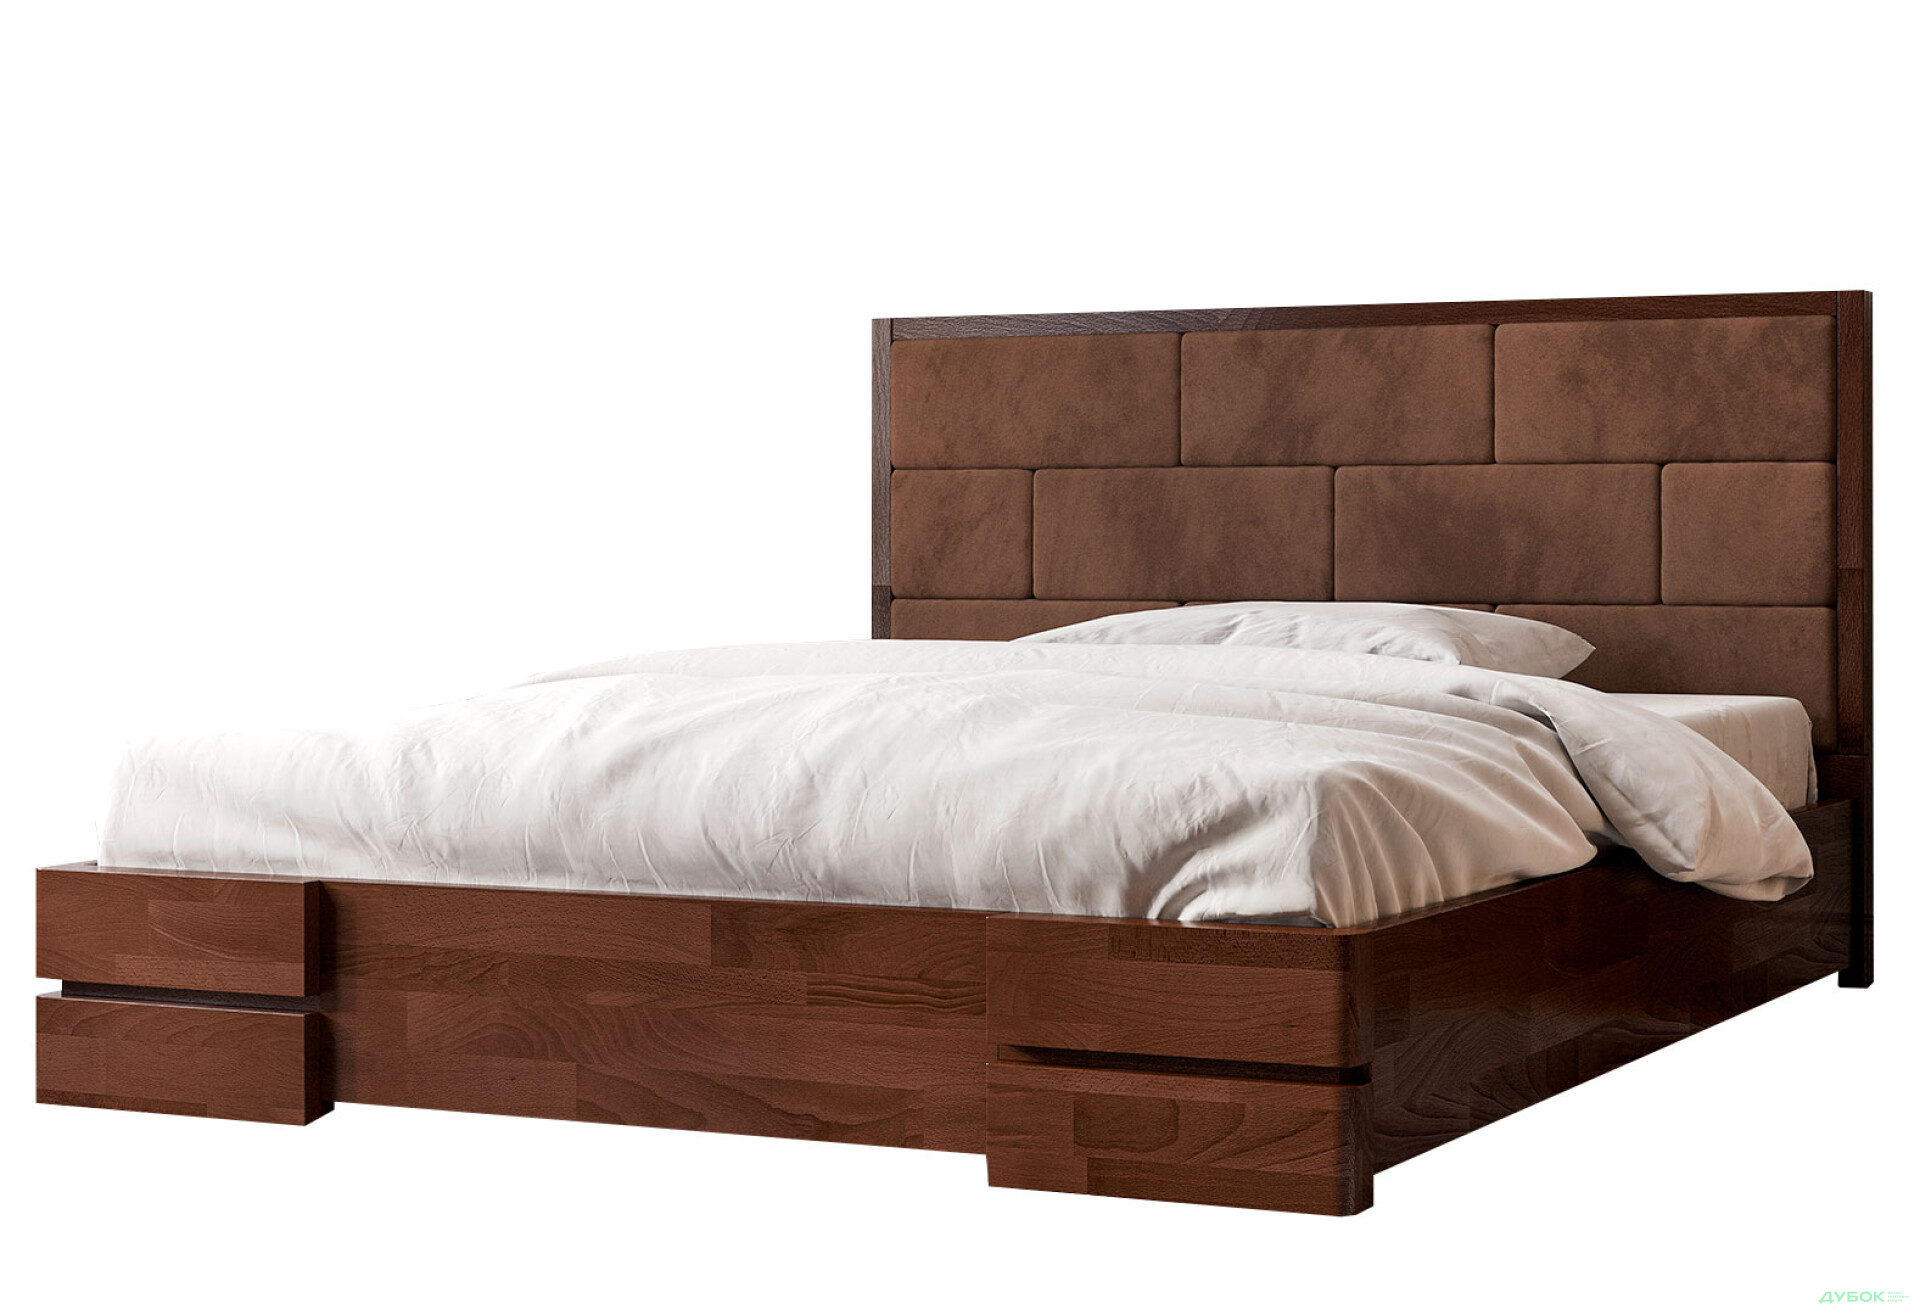 Фото 2 - Ліжко-подіум Arbor Drev Тоскана (бук) 160 см підйомне 